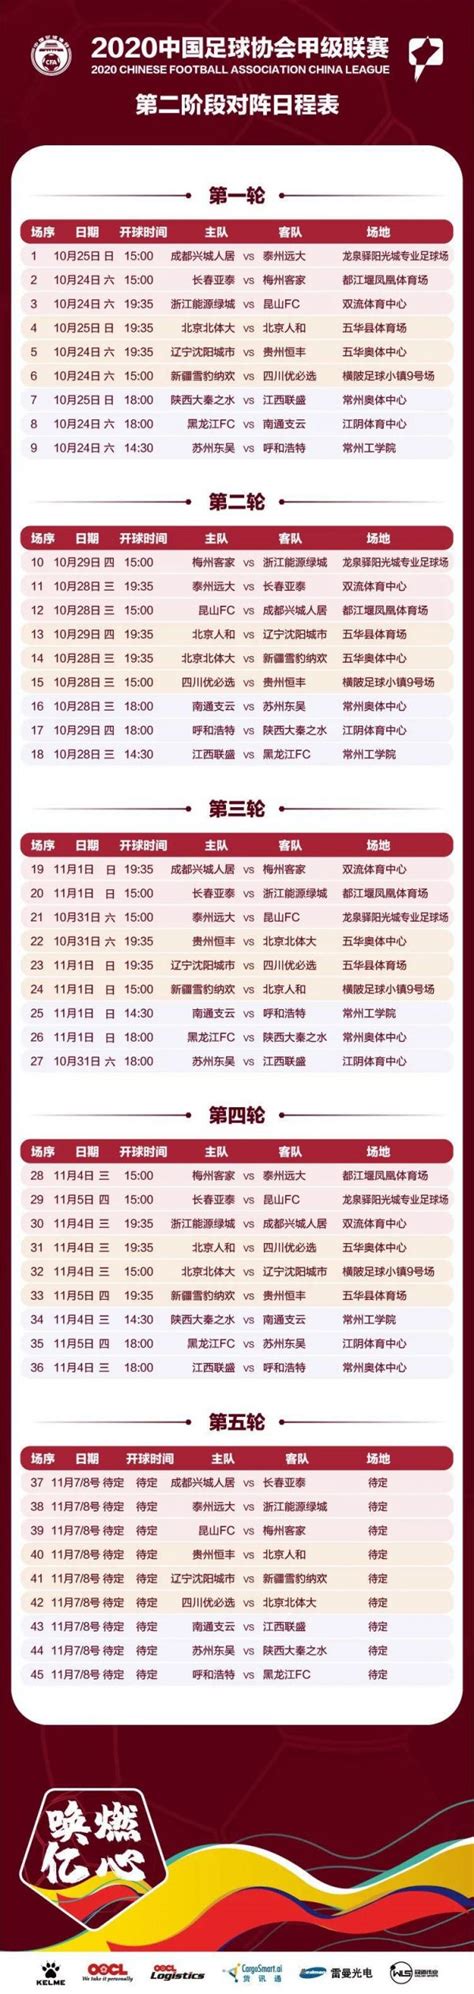 2020年中甲联赛第二阶段赛程表一览- 广州本地宝